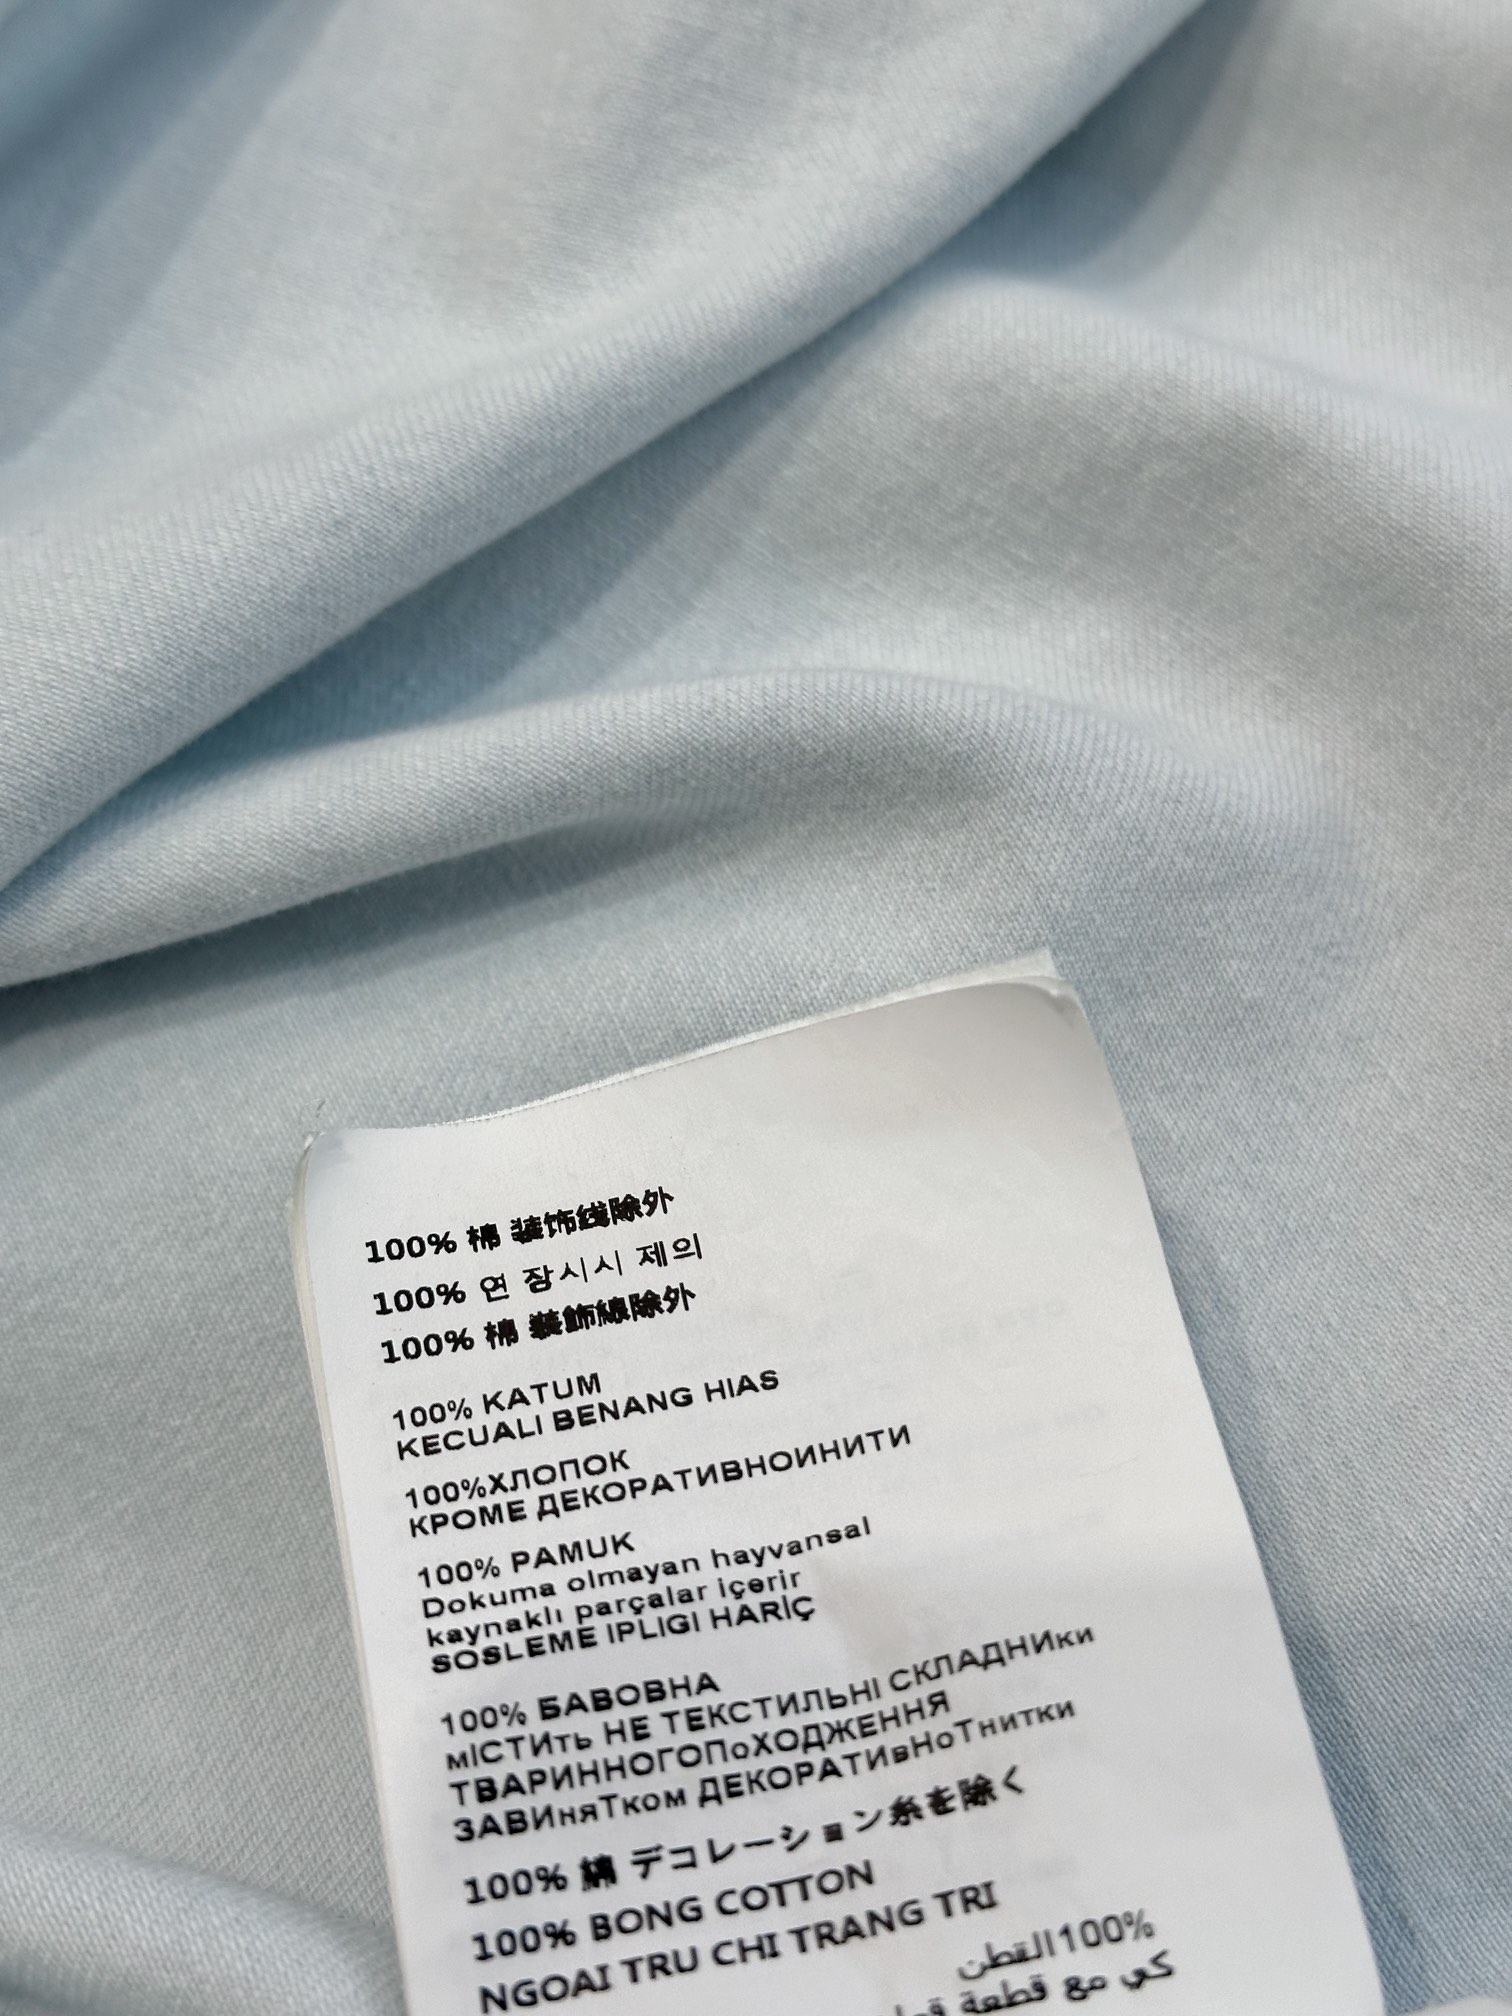 /新品发布浅蓝色牛仔衬衣定制牛仔棉面料面料在制作流程和耗时上花费了大量的时间多重洗水工艺洗软令面料手感颜